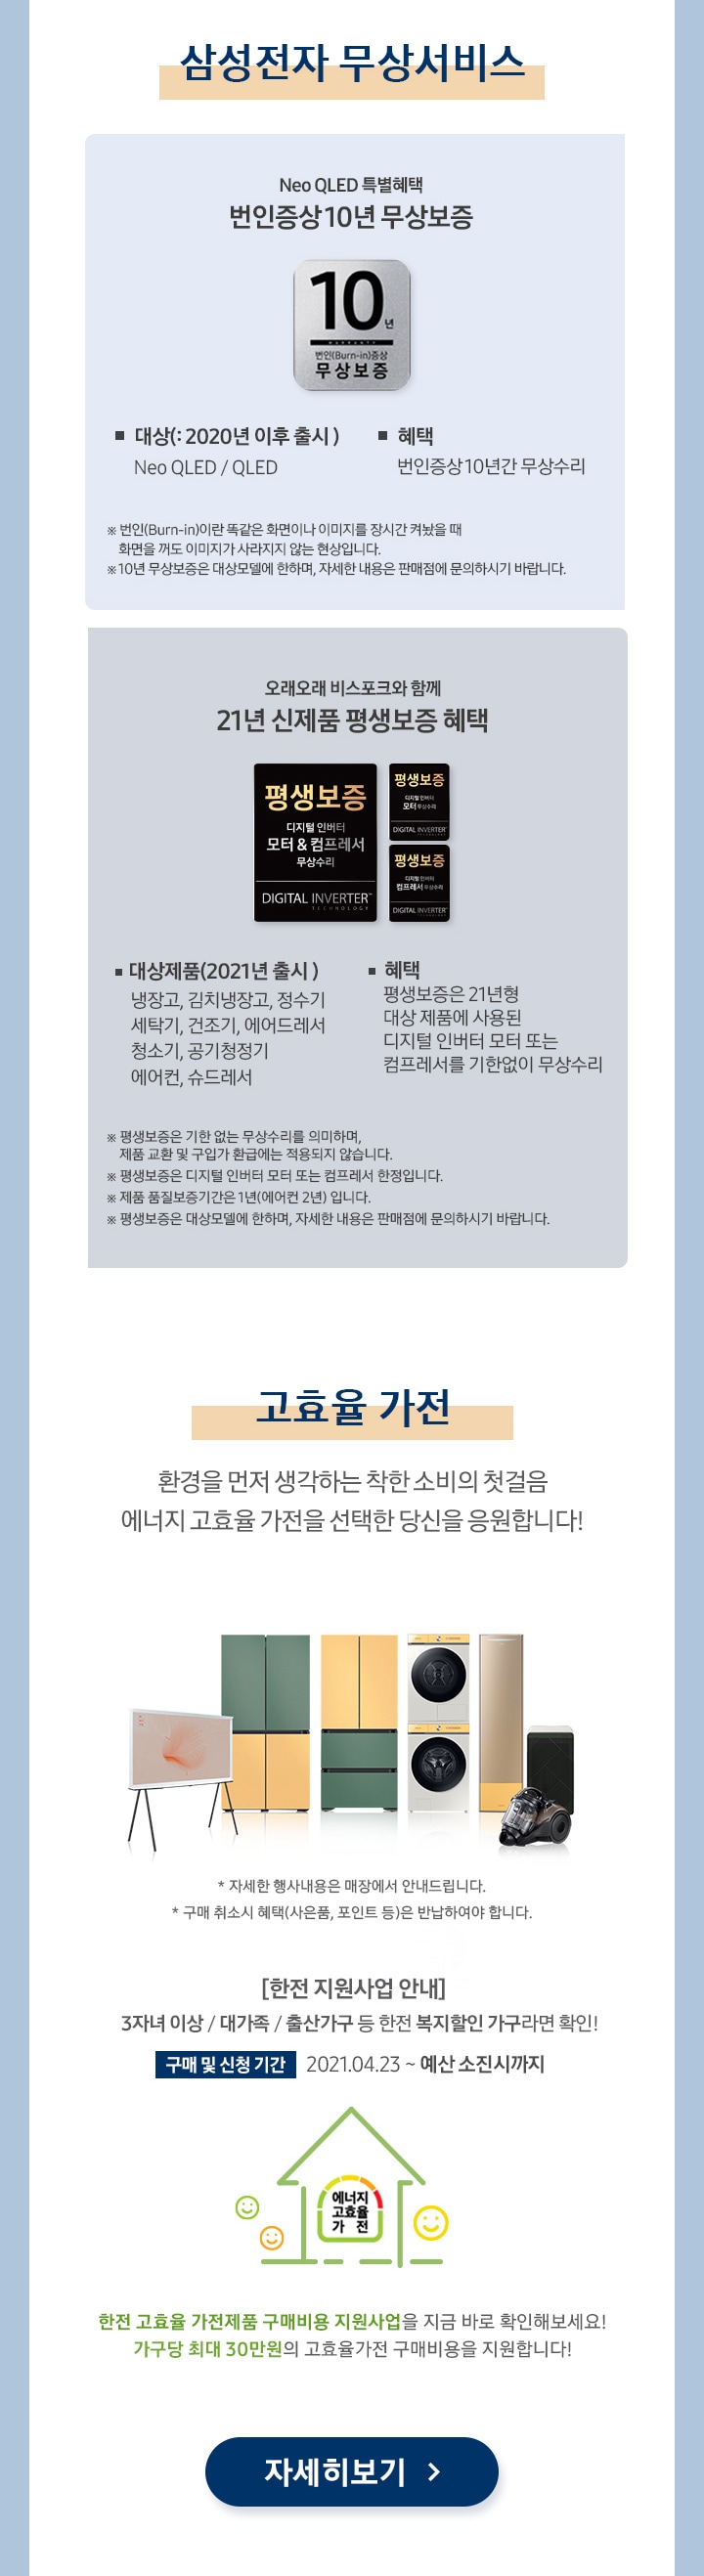 디지털프라자 이벤트 | Samsung 대한민국